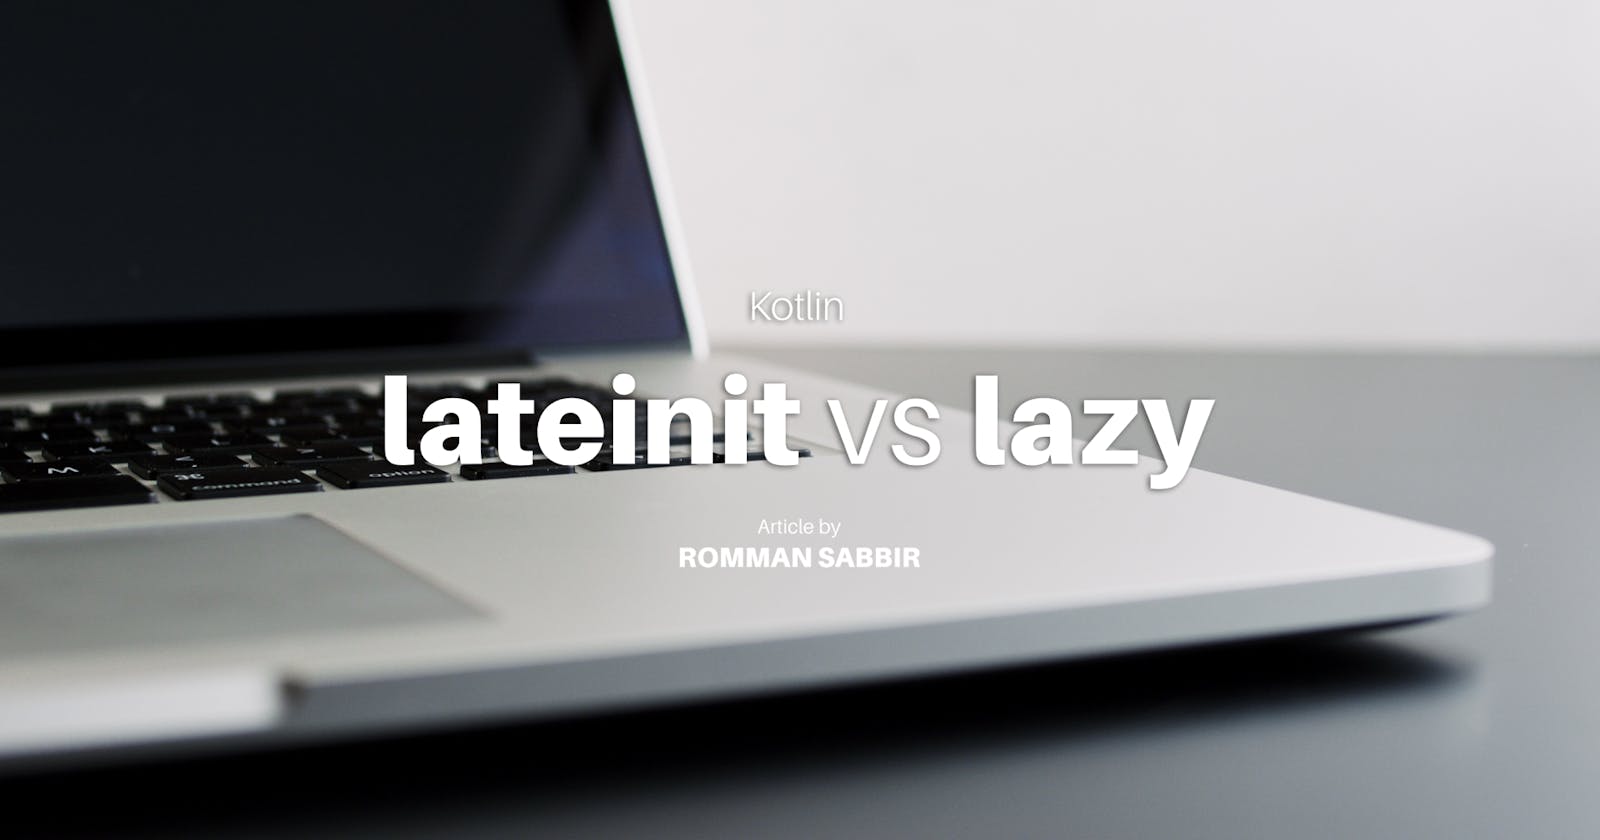 Kotlin: lateinit vs lazy